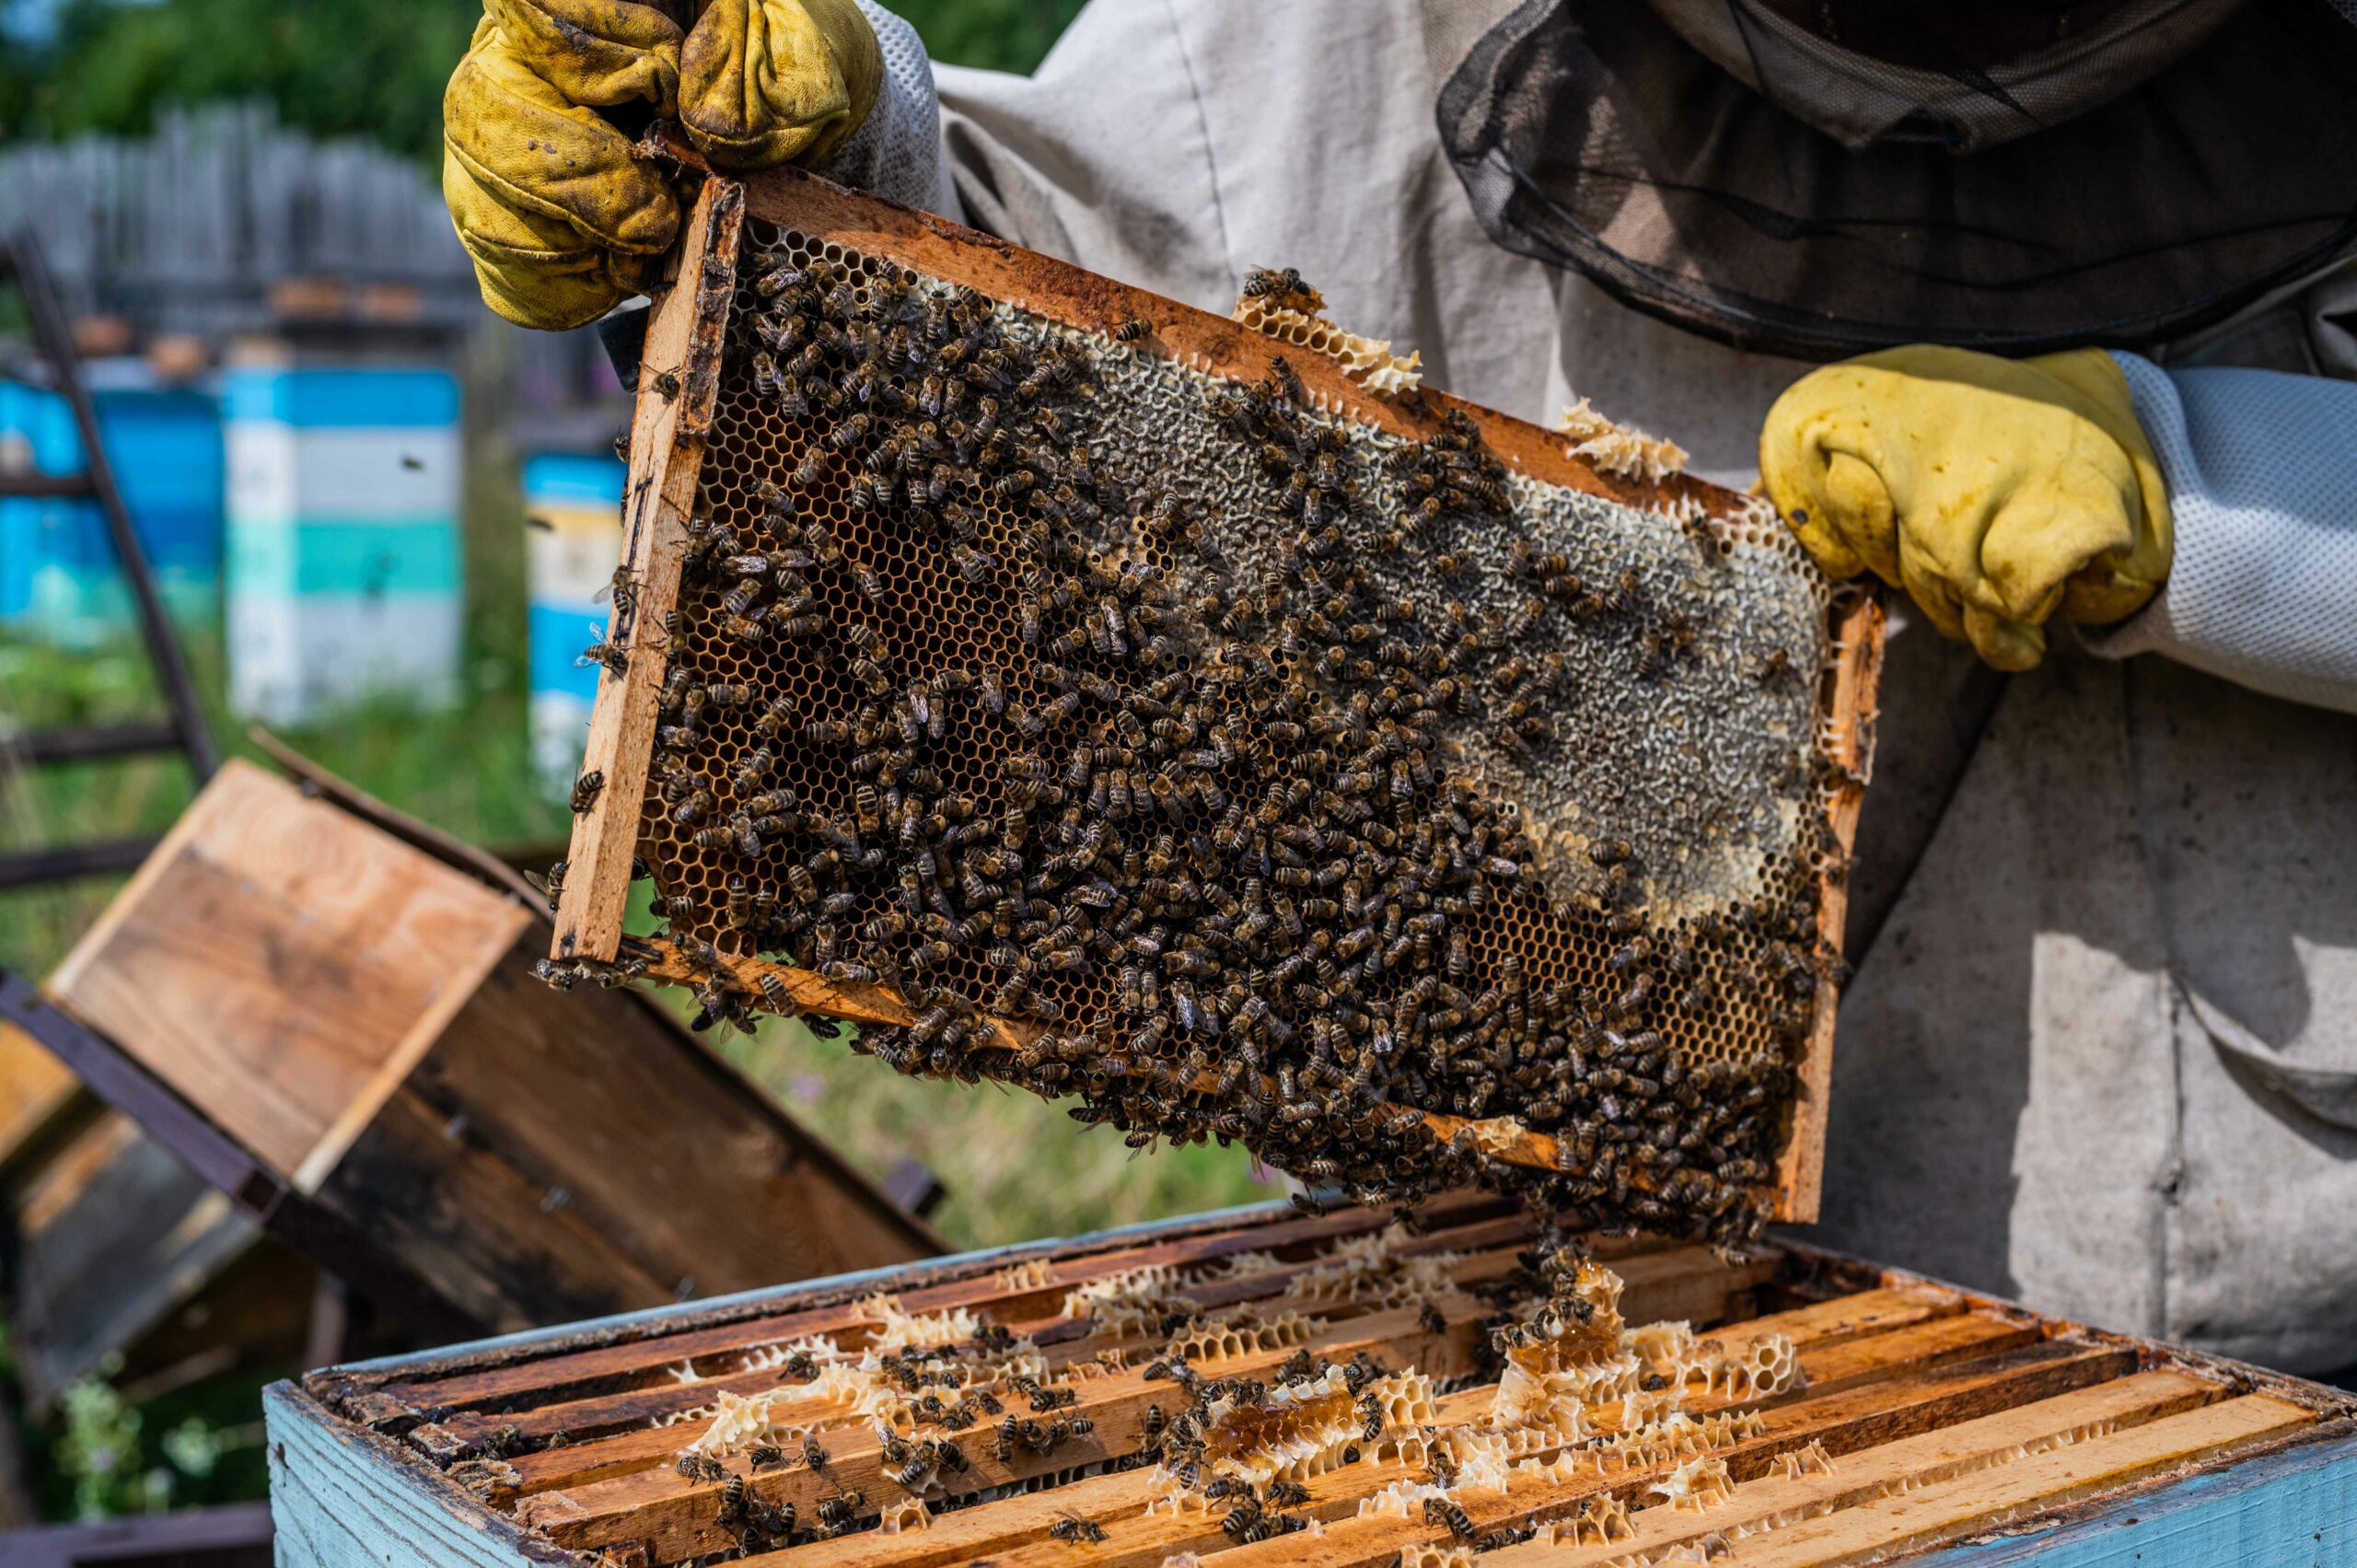 Imagen ilustrativa de apiario y producción de miel de abeja.